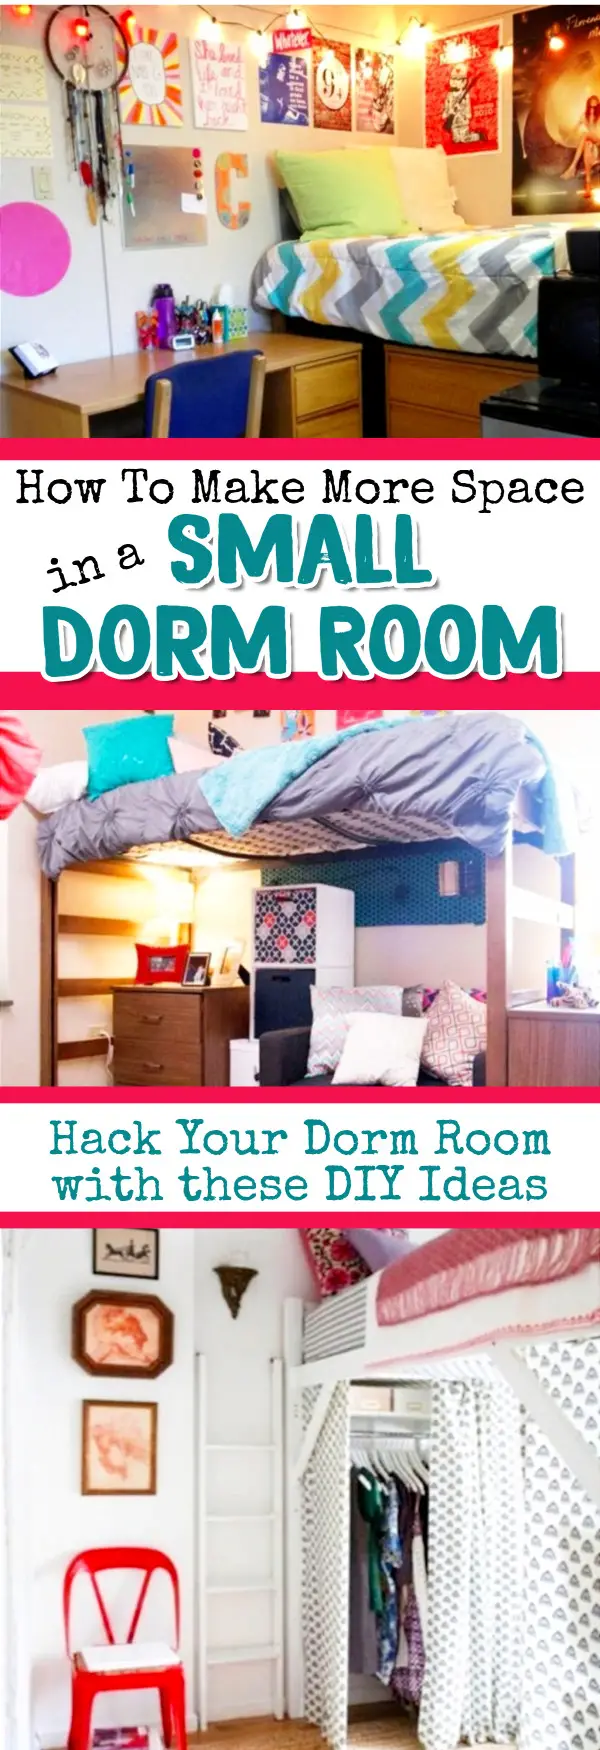 Dorm Room Ideas 20 Cute & Aesthetic Ideas For Your DormRoom in 20